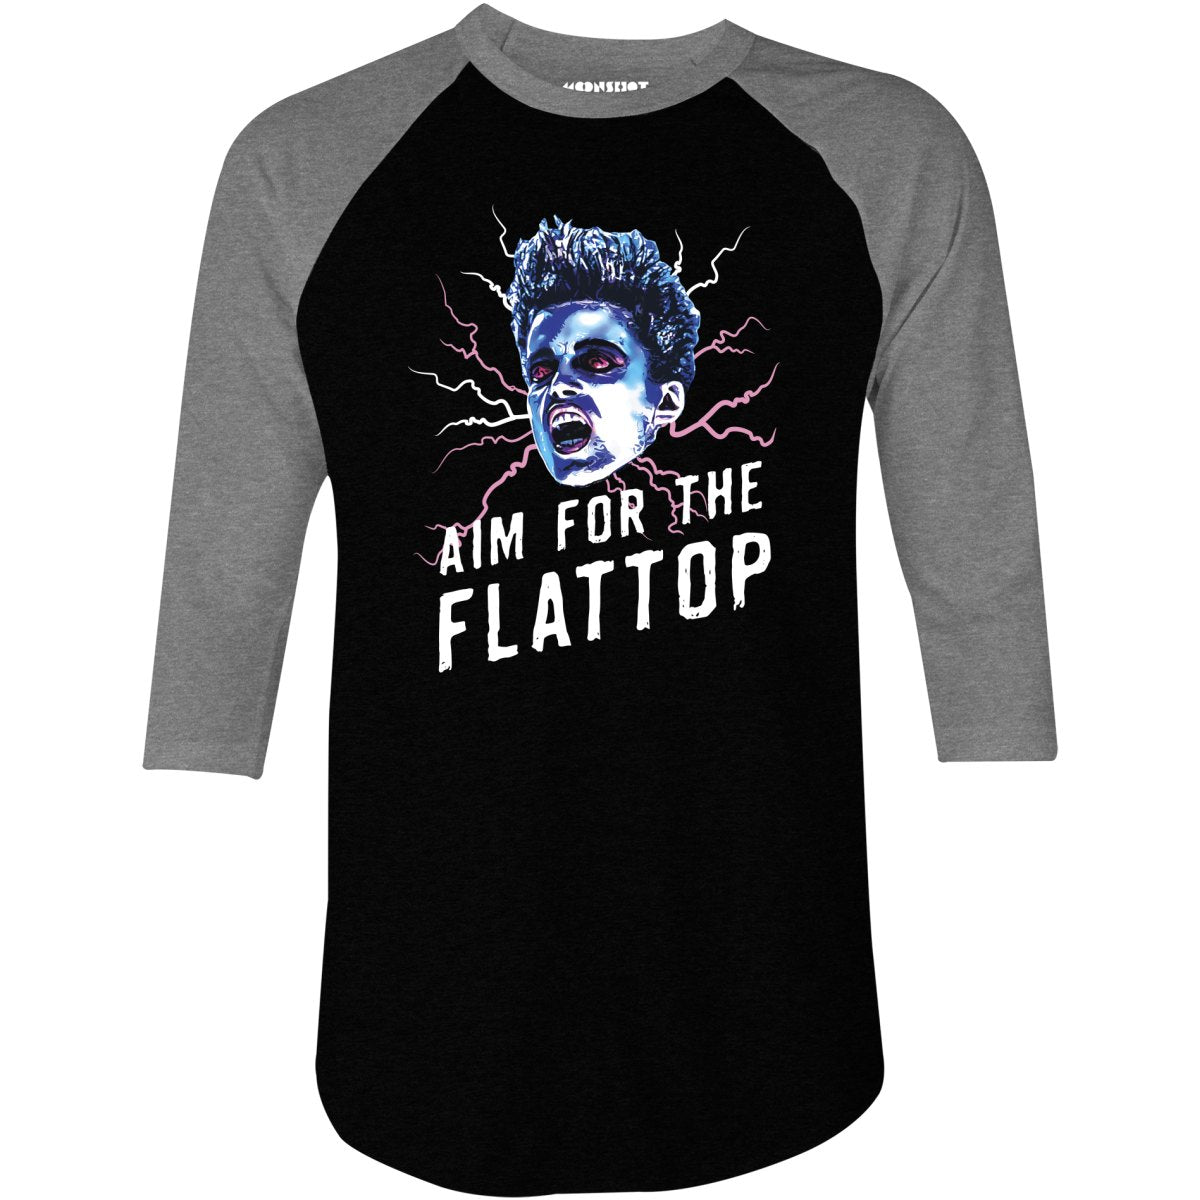 Aim For The Flattop - 3/4 Sleeve Raglan T-Shirt